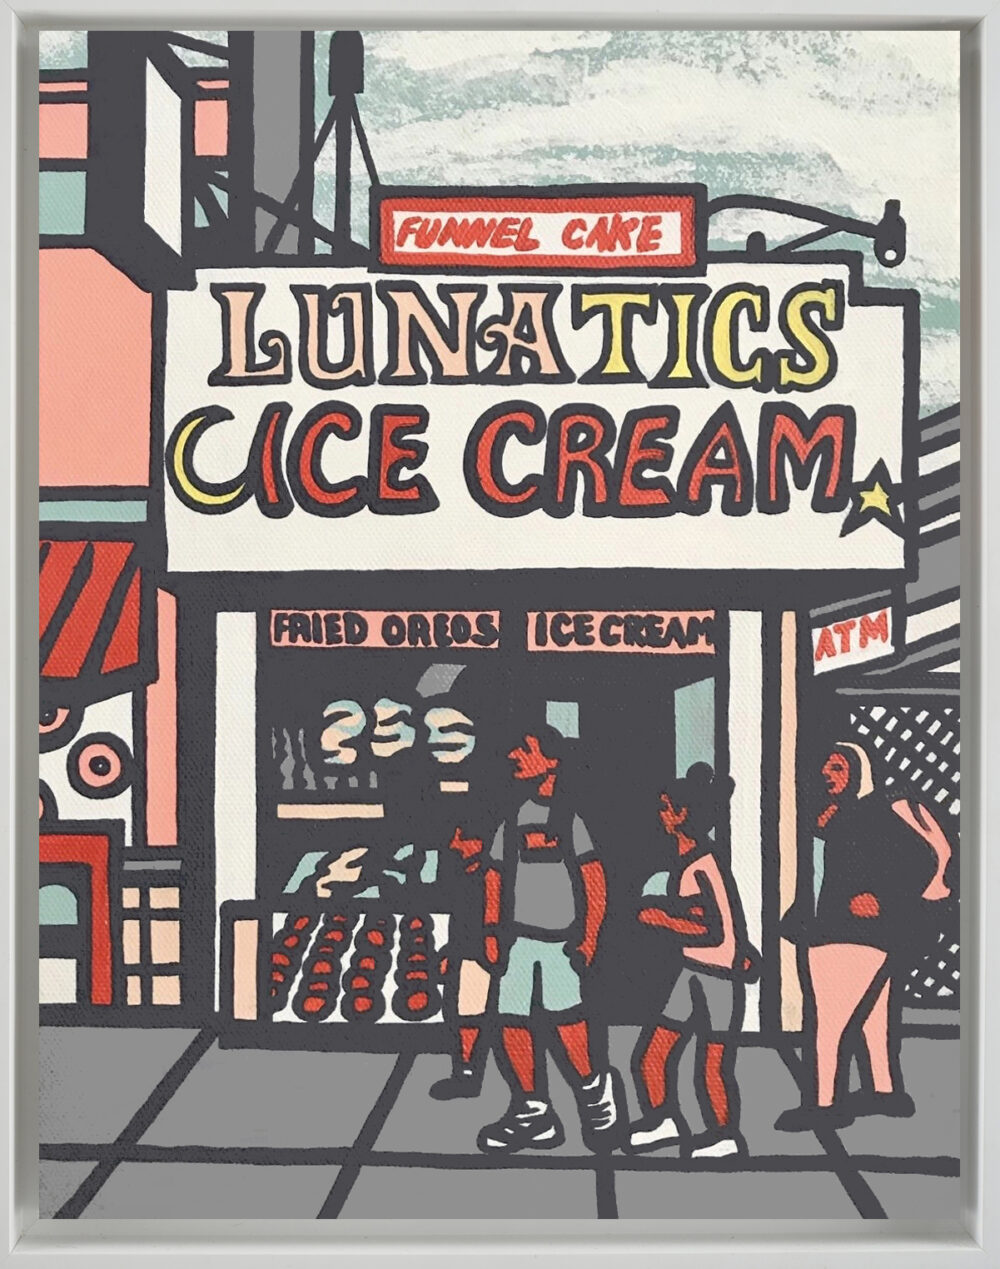 Lunatics Ice Cream Coney Island.